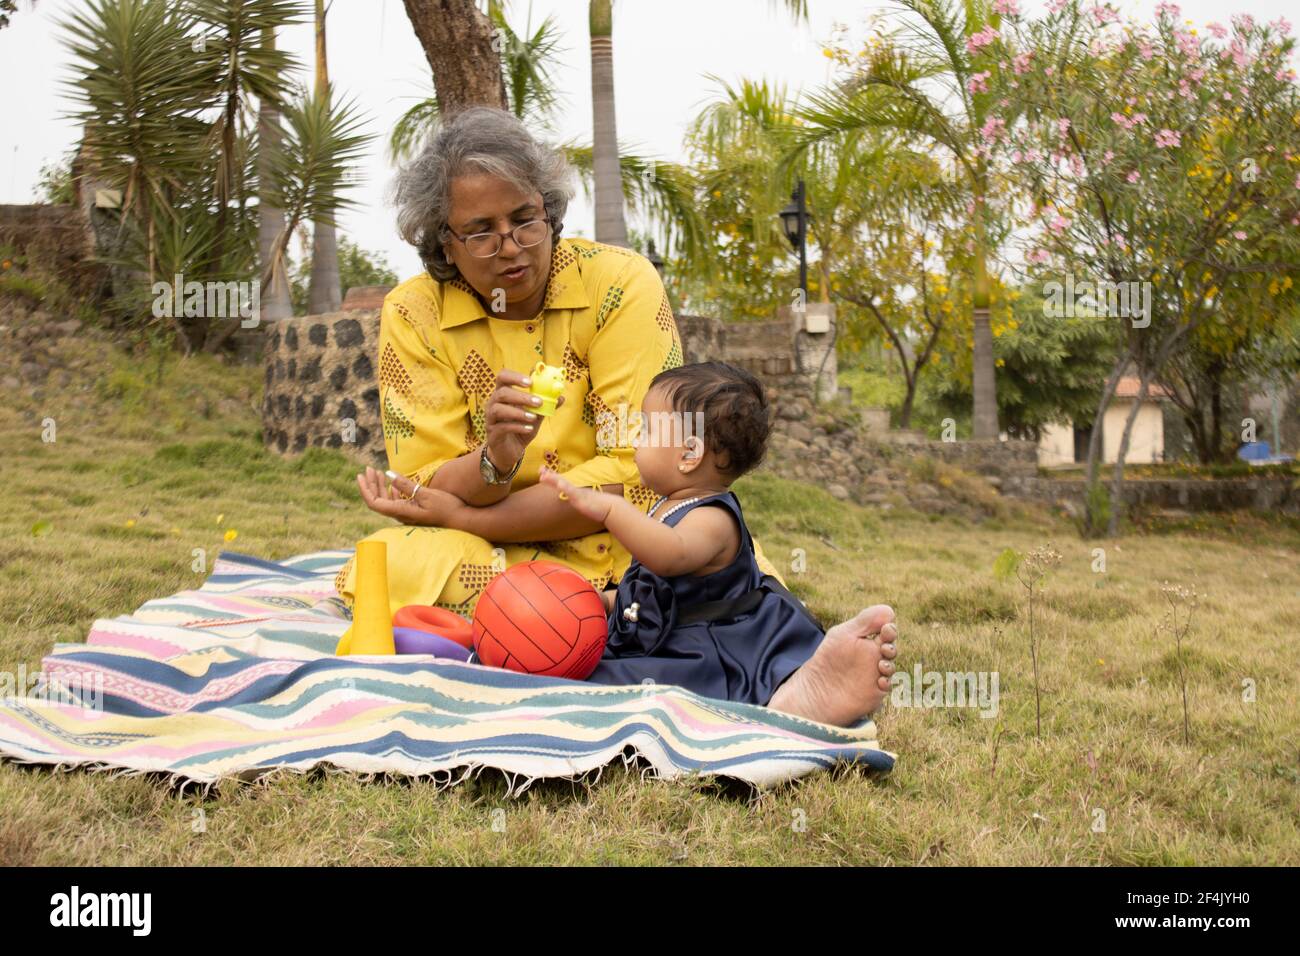 Glückliche Momente mit Oma, indische oder asiatische ältere Dame verbringen Zeit mit ihrer Enkelin im Garten. Stockfoto